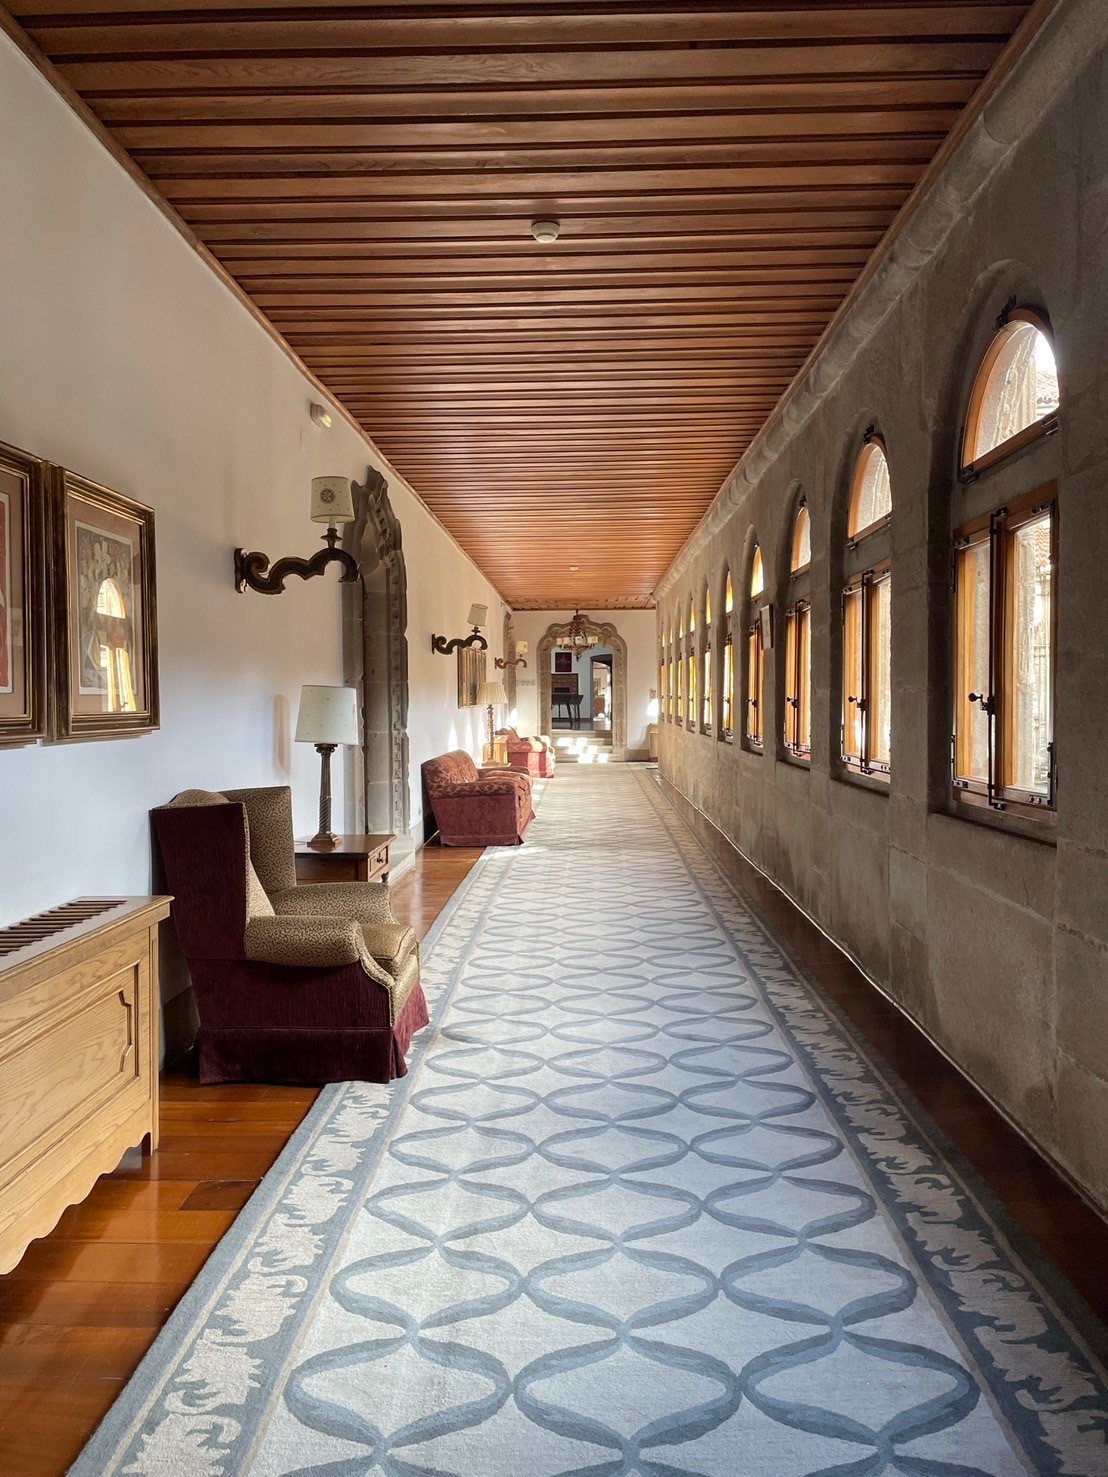 終點聖地牙哥的Parador de Santiago de Compostela五星級國民賓館，已超過500年歷史，是西班牙國王命令興建的朝聖者旅社。(蕭玉芬提供)